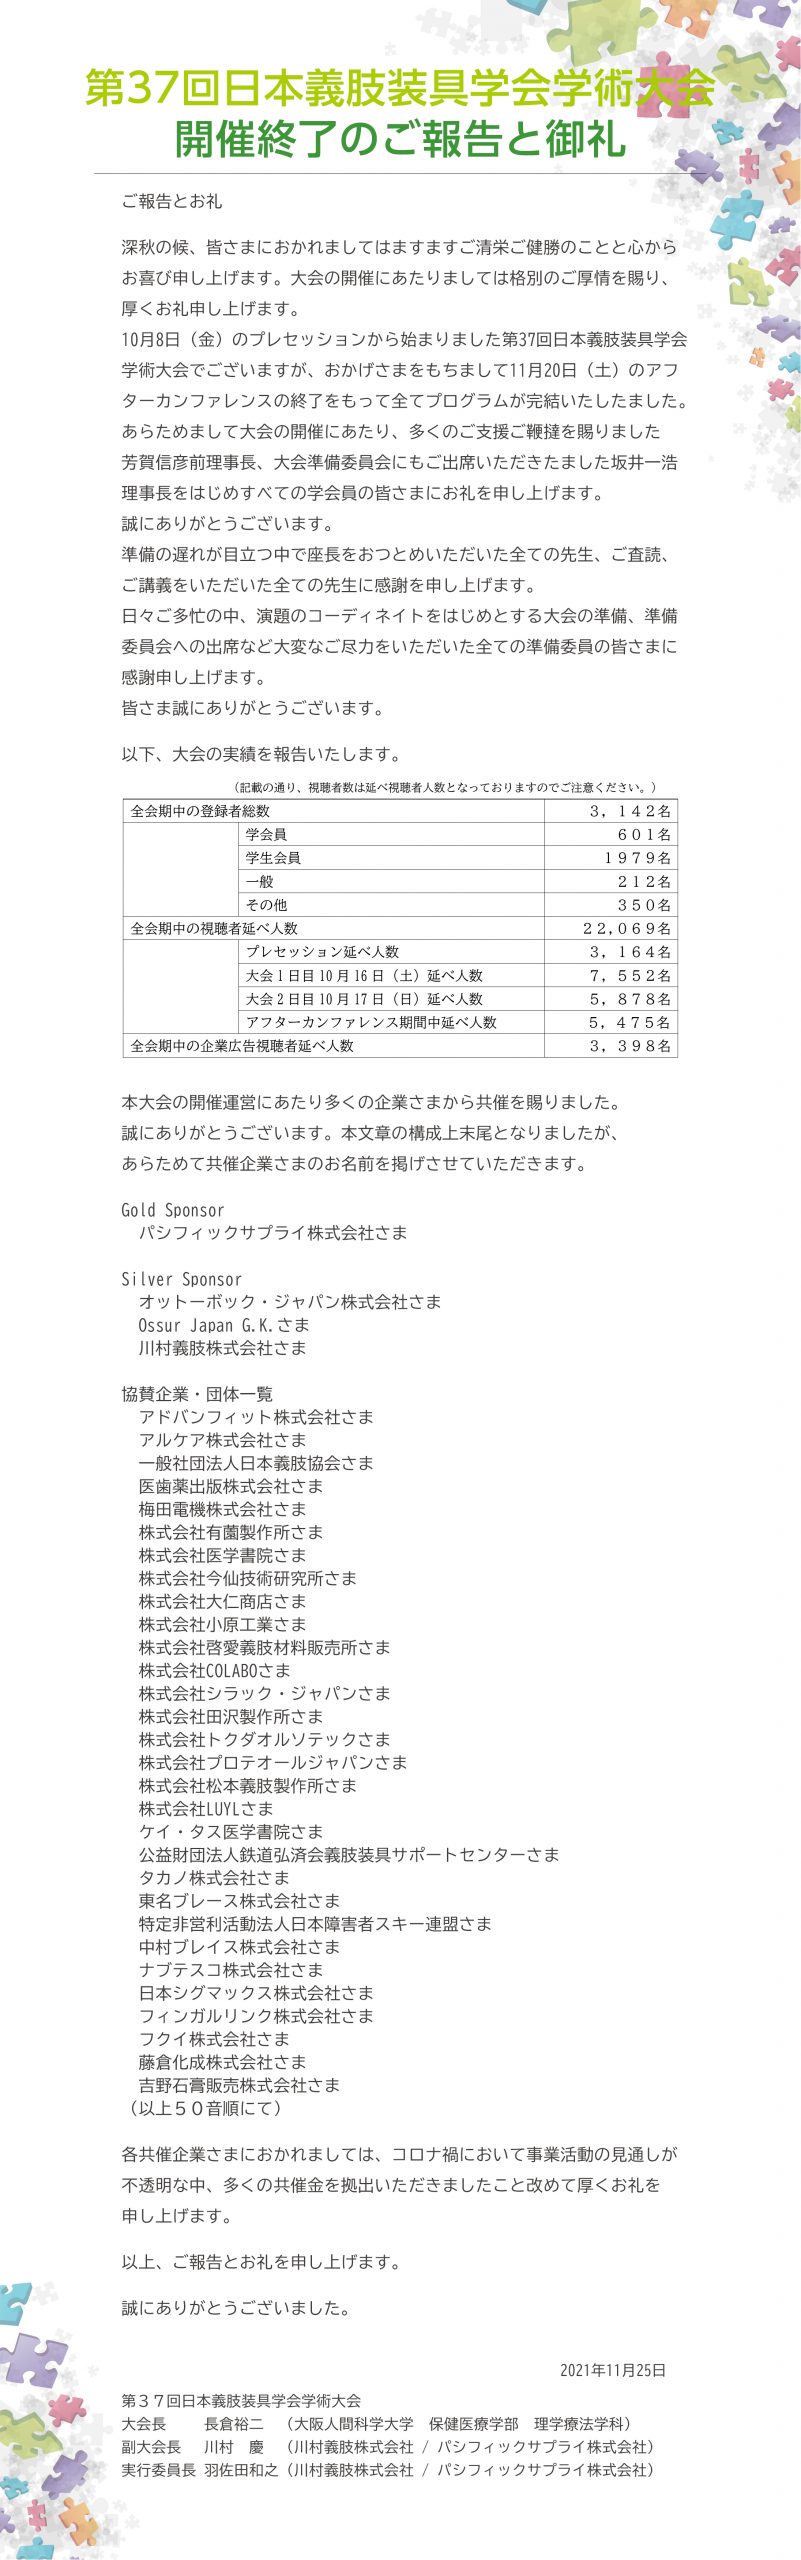 第37回 日本義肢装具学会学術大会開催終了のご報告と御礼